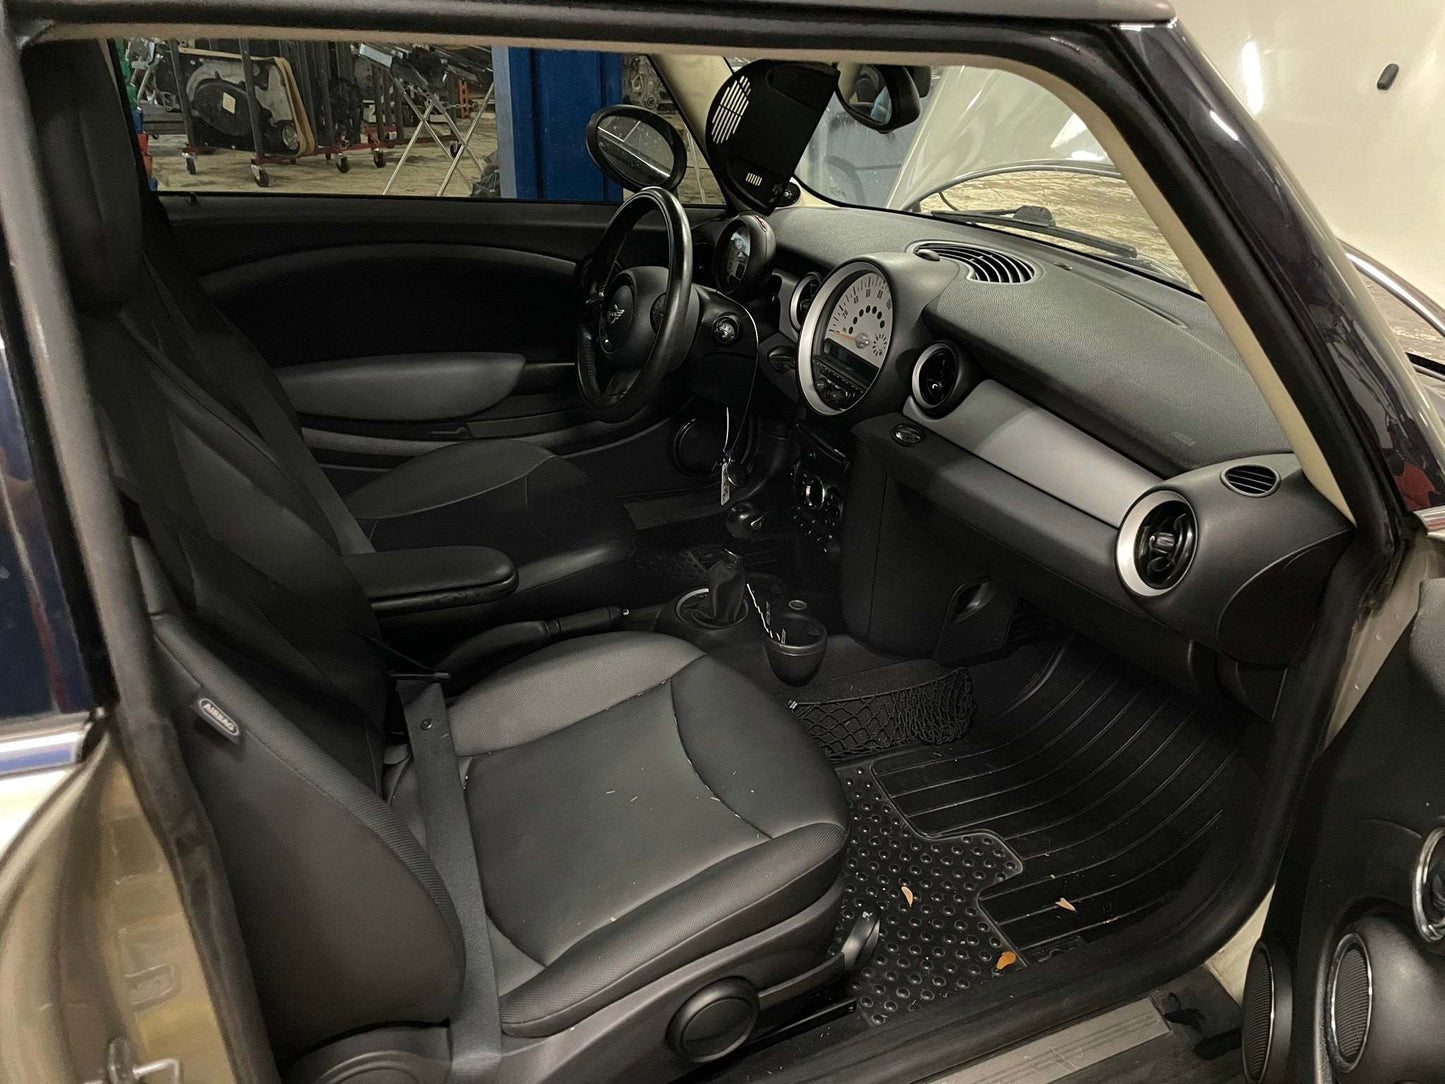 2011 MINI Cooper Hatchback Base, New Parts Car (April 2021) Stk # 235